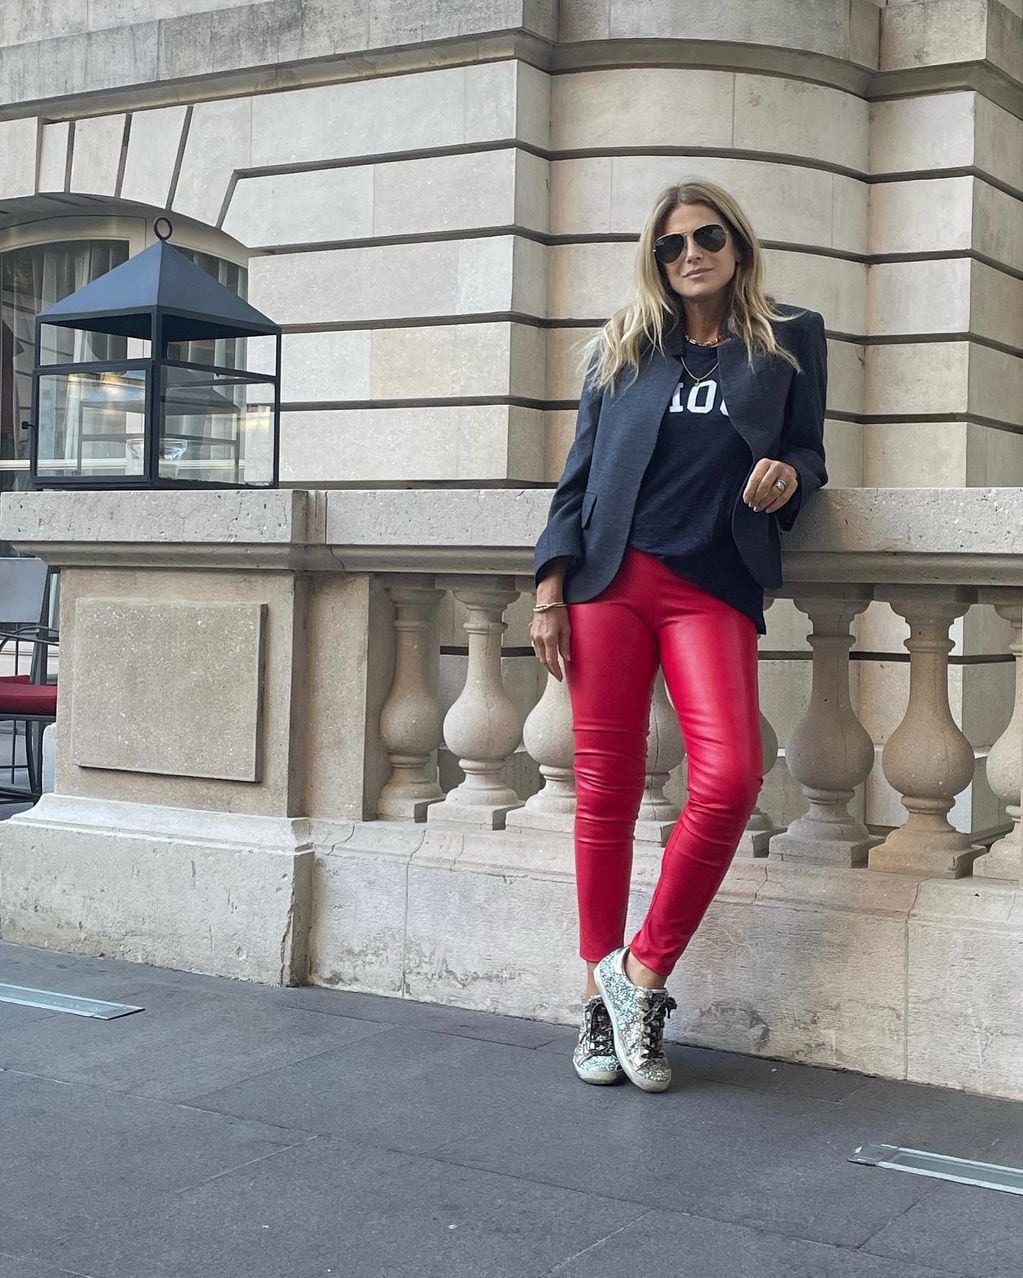 Flavia Palmiero comparte su look canchero con leggins rojos de cuero ecológico